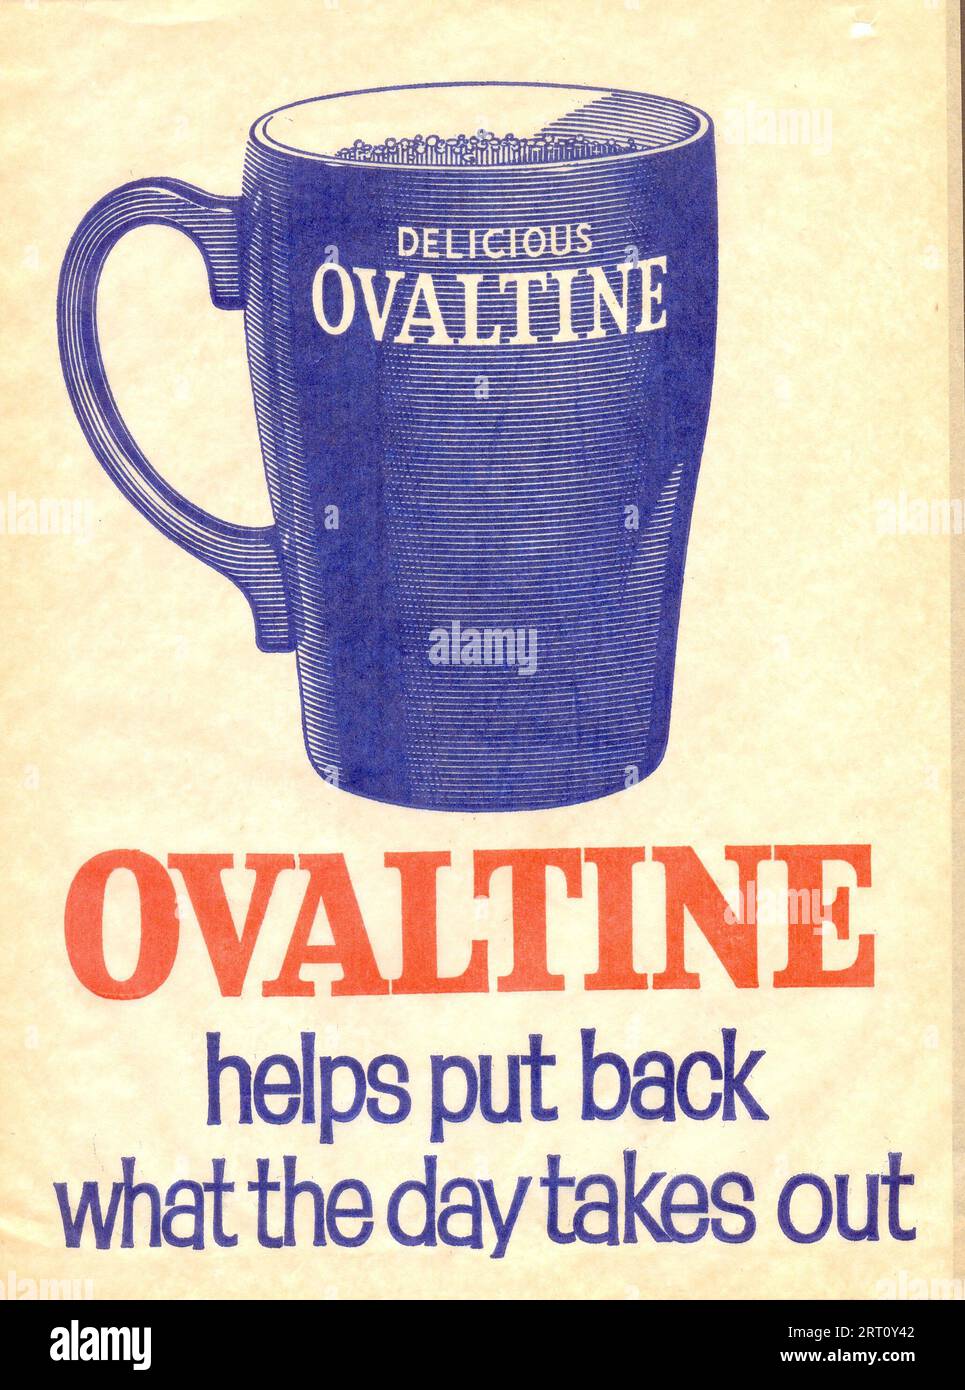 Papiertüte Werbung für Delicious Ovaltine hilft, etwas zurückzudrängen, was der Tag um 1933 dauert Stockfoto